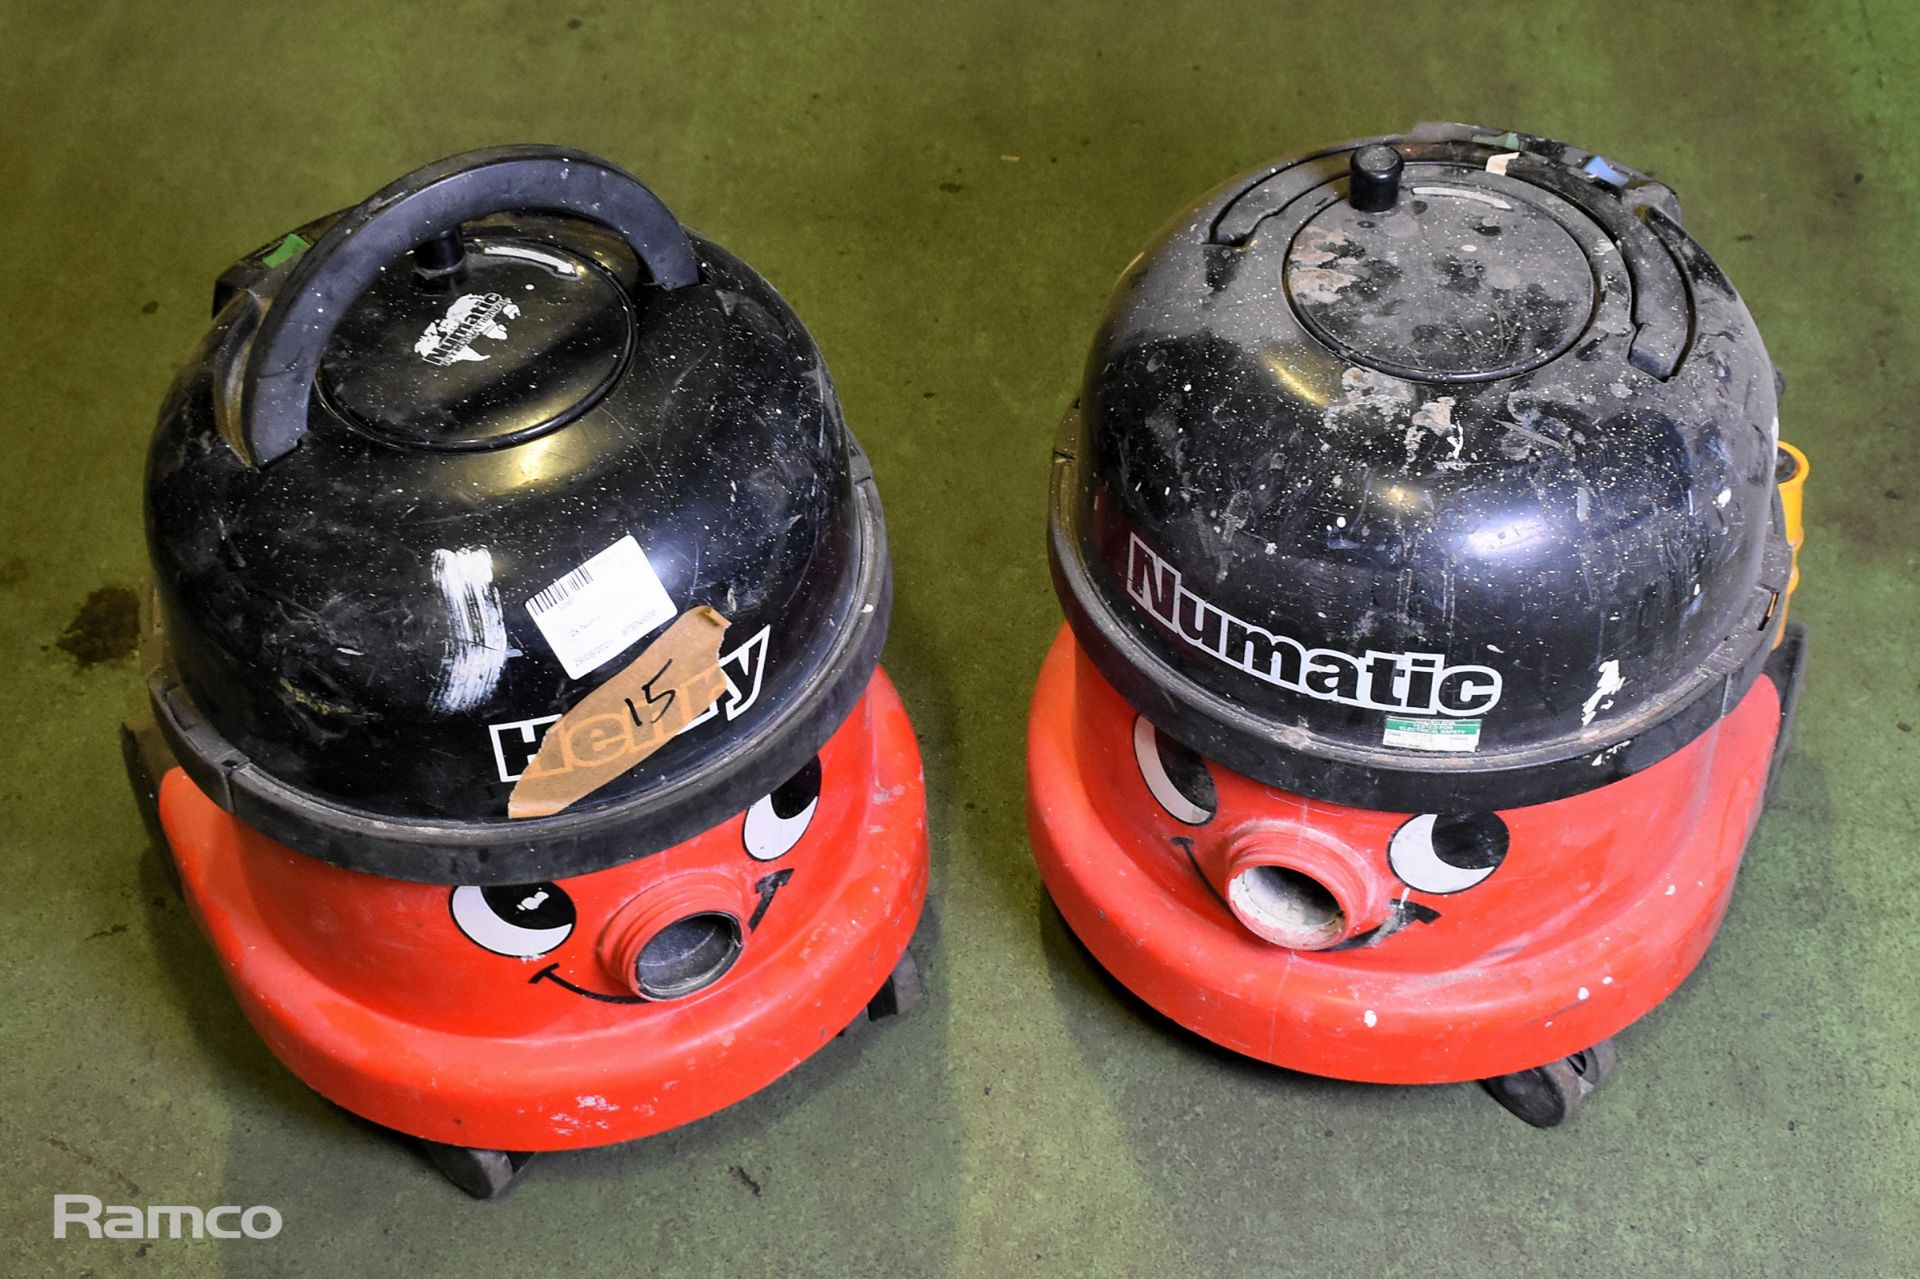 1x Numatic vacuum, 1x Henry Vacuum - no accessories - AS SPARES OR REPAIRS